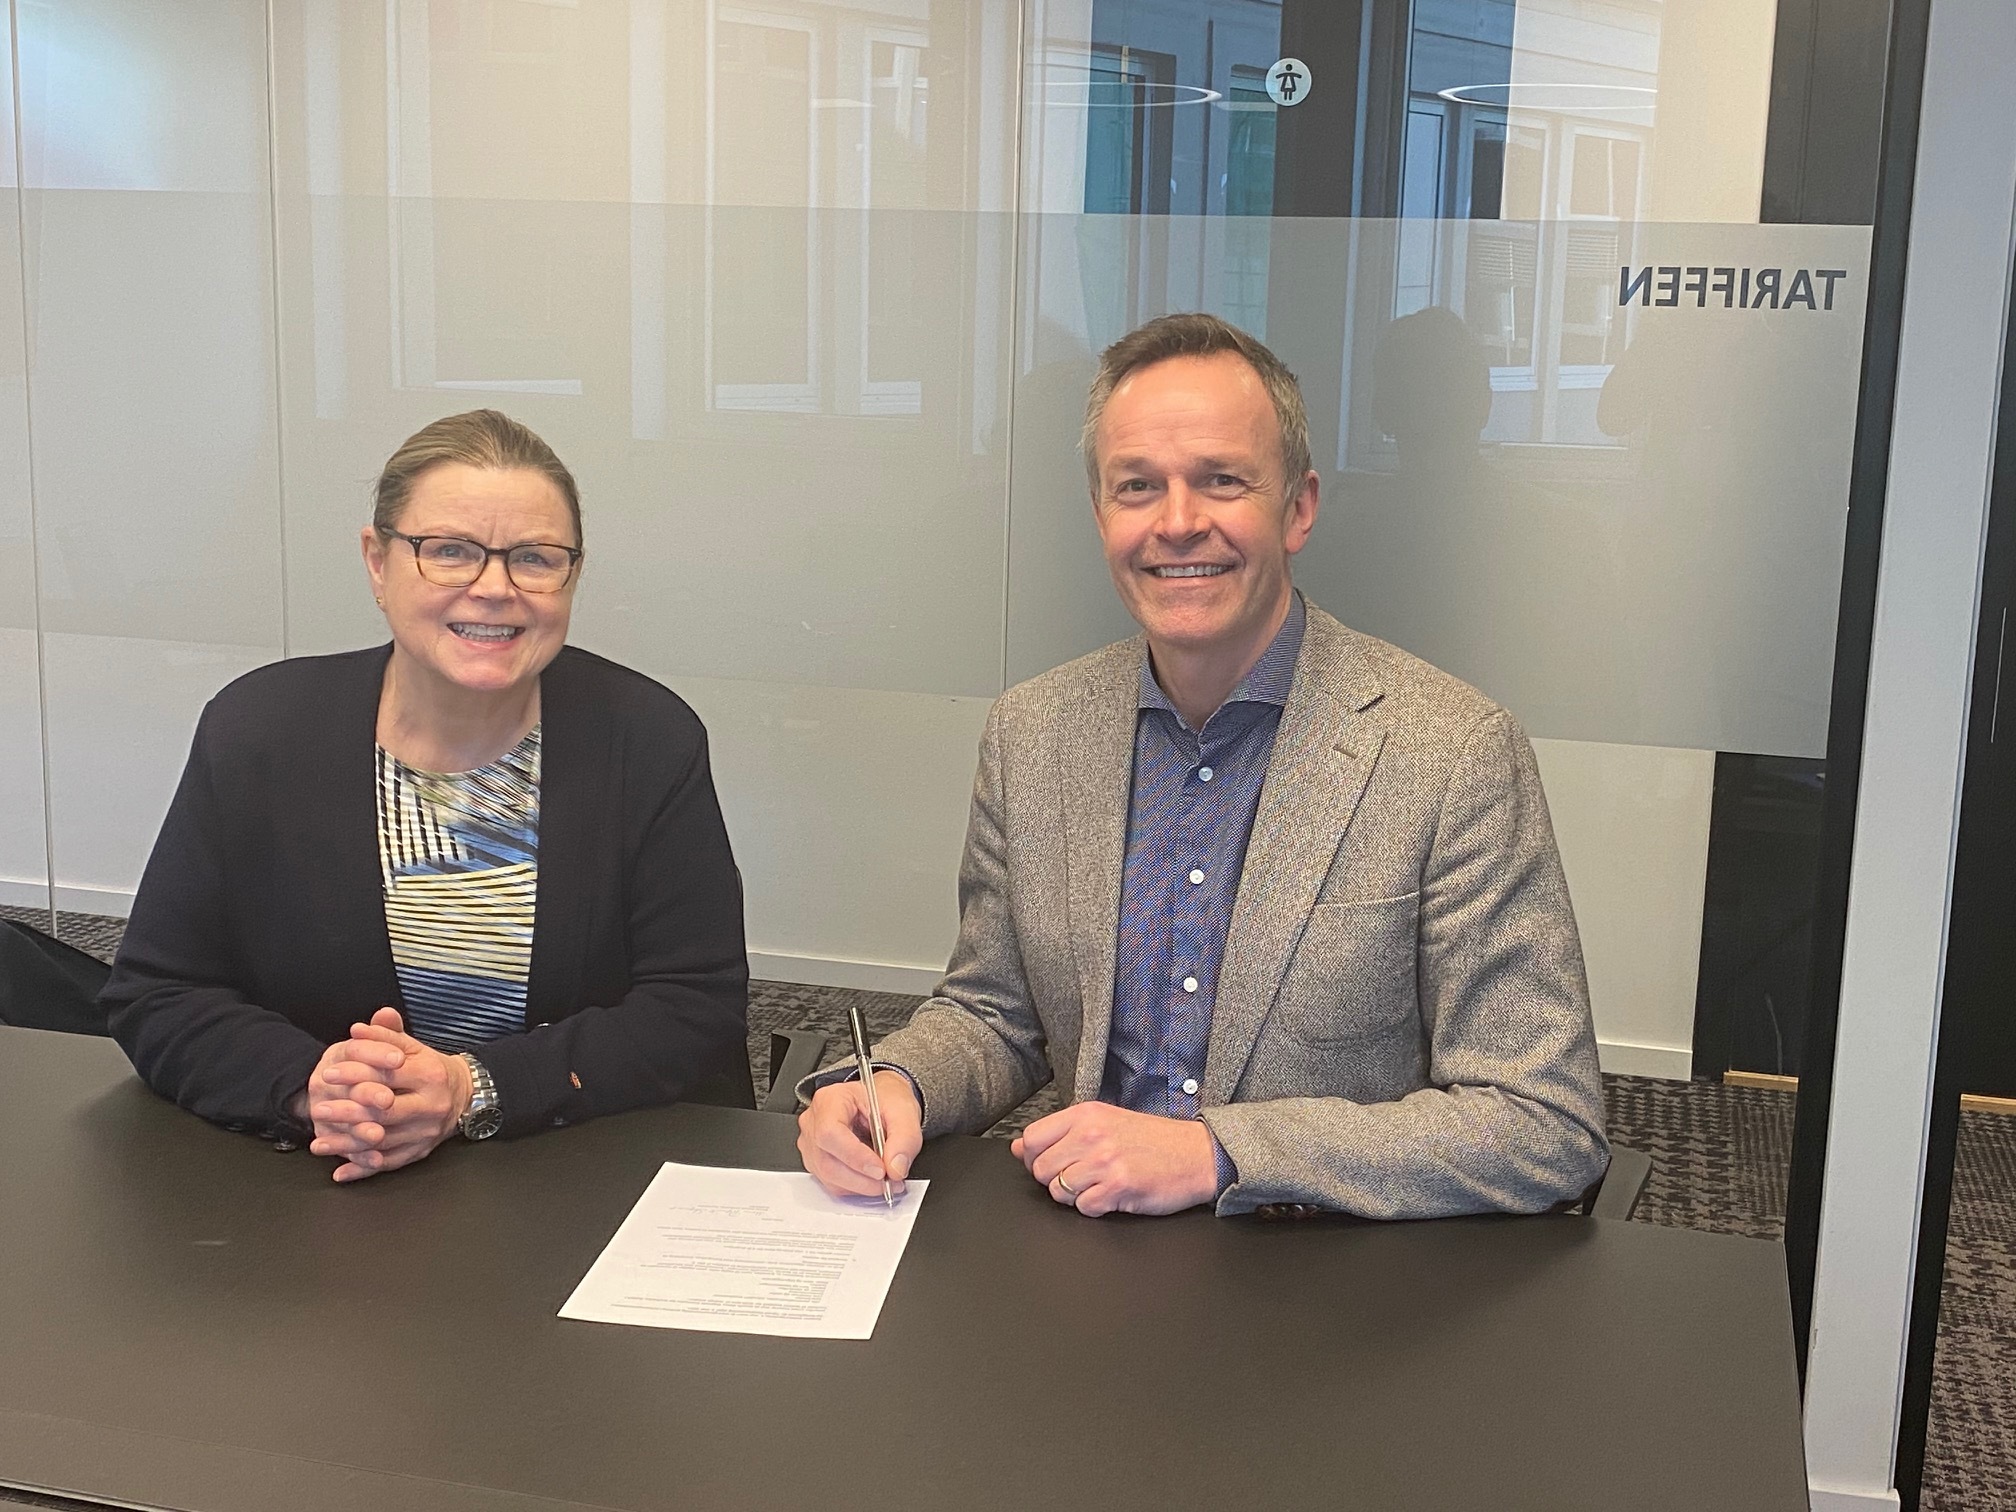 Avtale KS Bedrift Kraftfylka signering